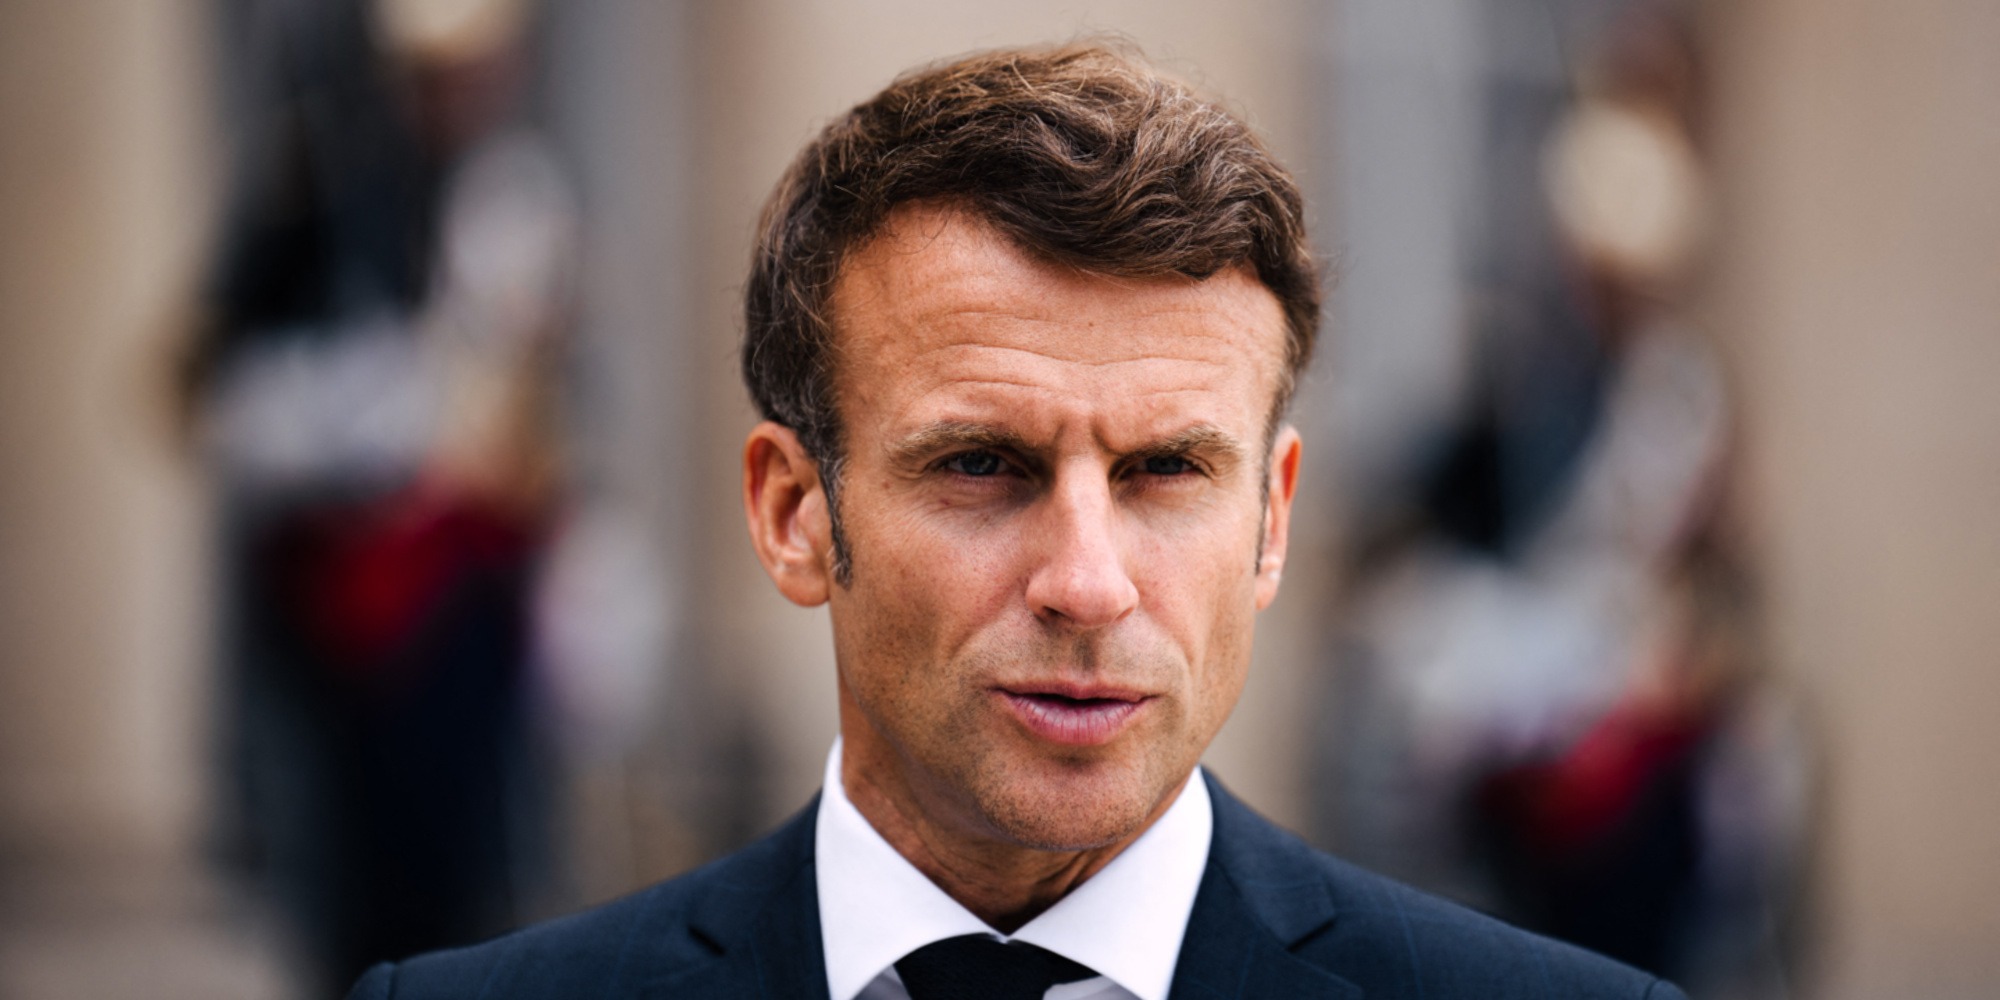 Emmanuel-Macron-eleve-d-Ali-Baddou-a-Sciences-Po-le-journaliste-revele-les-notes-qu-il-mettait-au-president.jpg